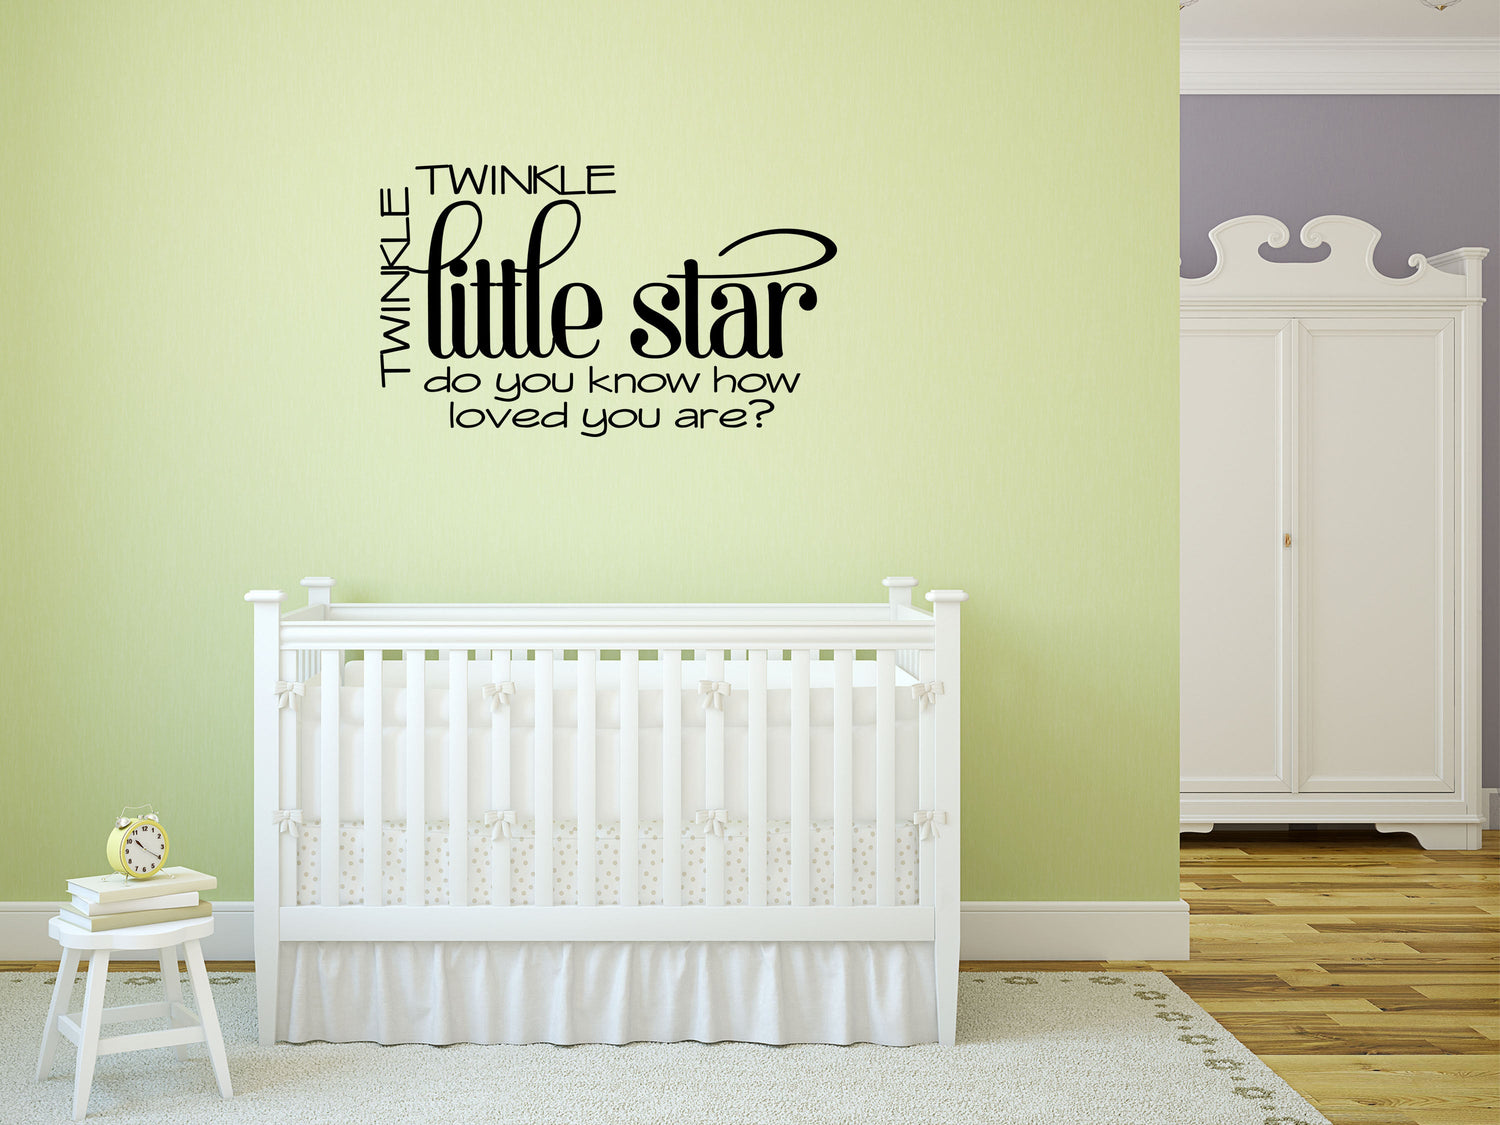 Twinkle Twinkle Little Star - Inspirational Wall Signs Vinyl Wall Decal Inspirational Wall Signs 